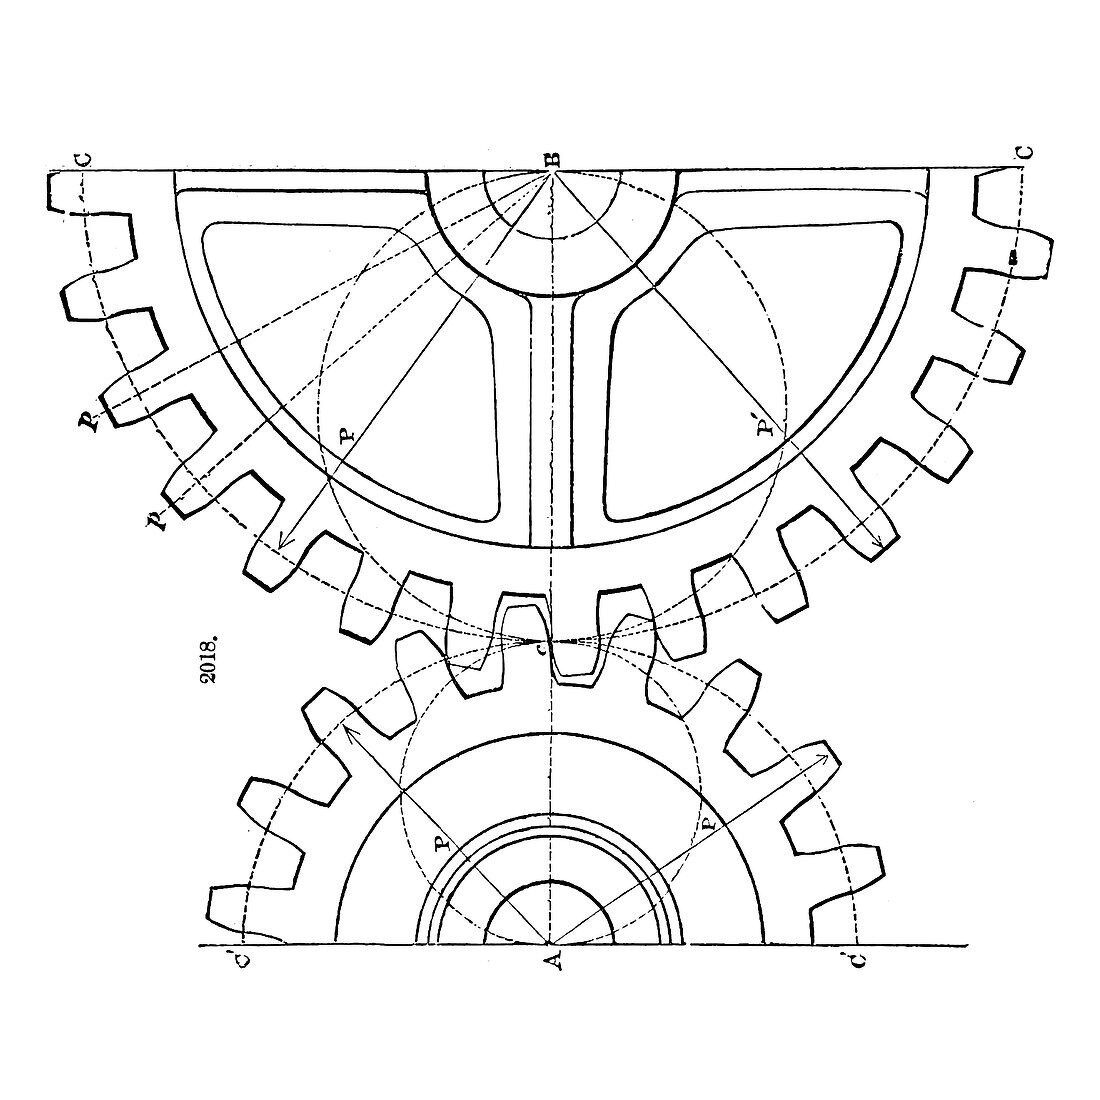 Gear-cutting machine, illustration